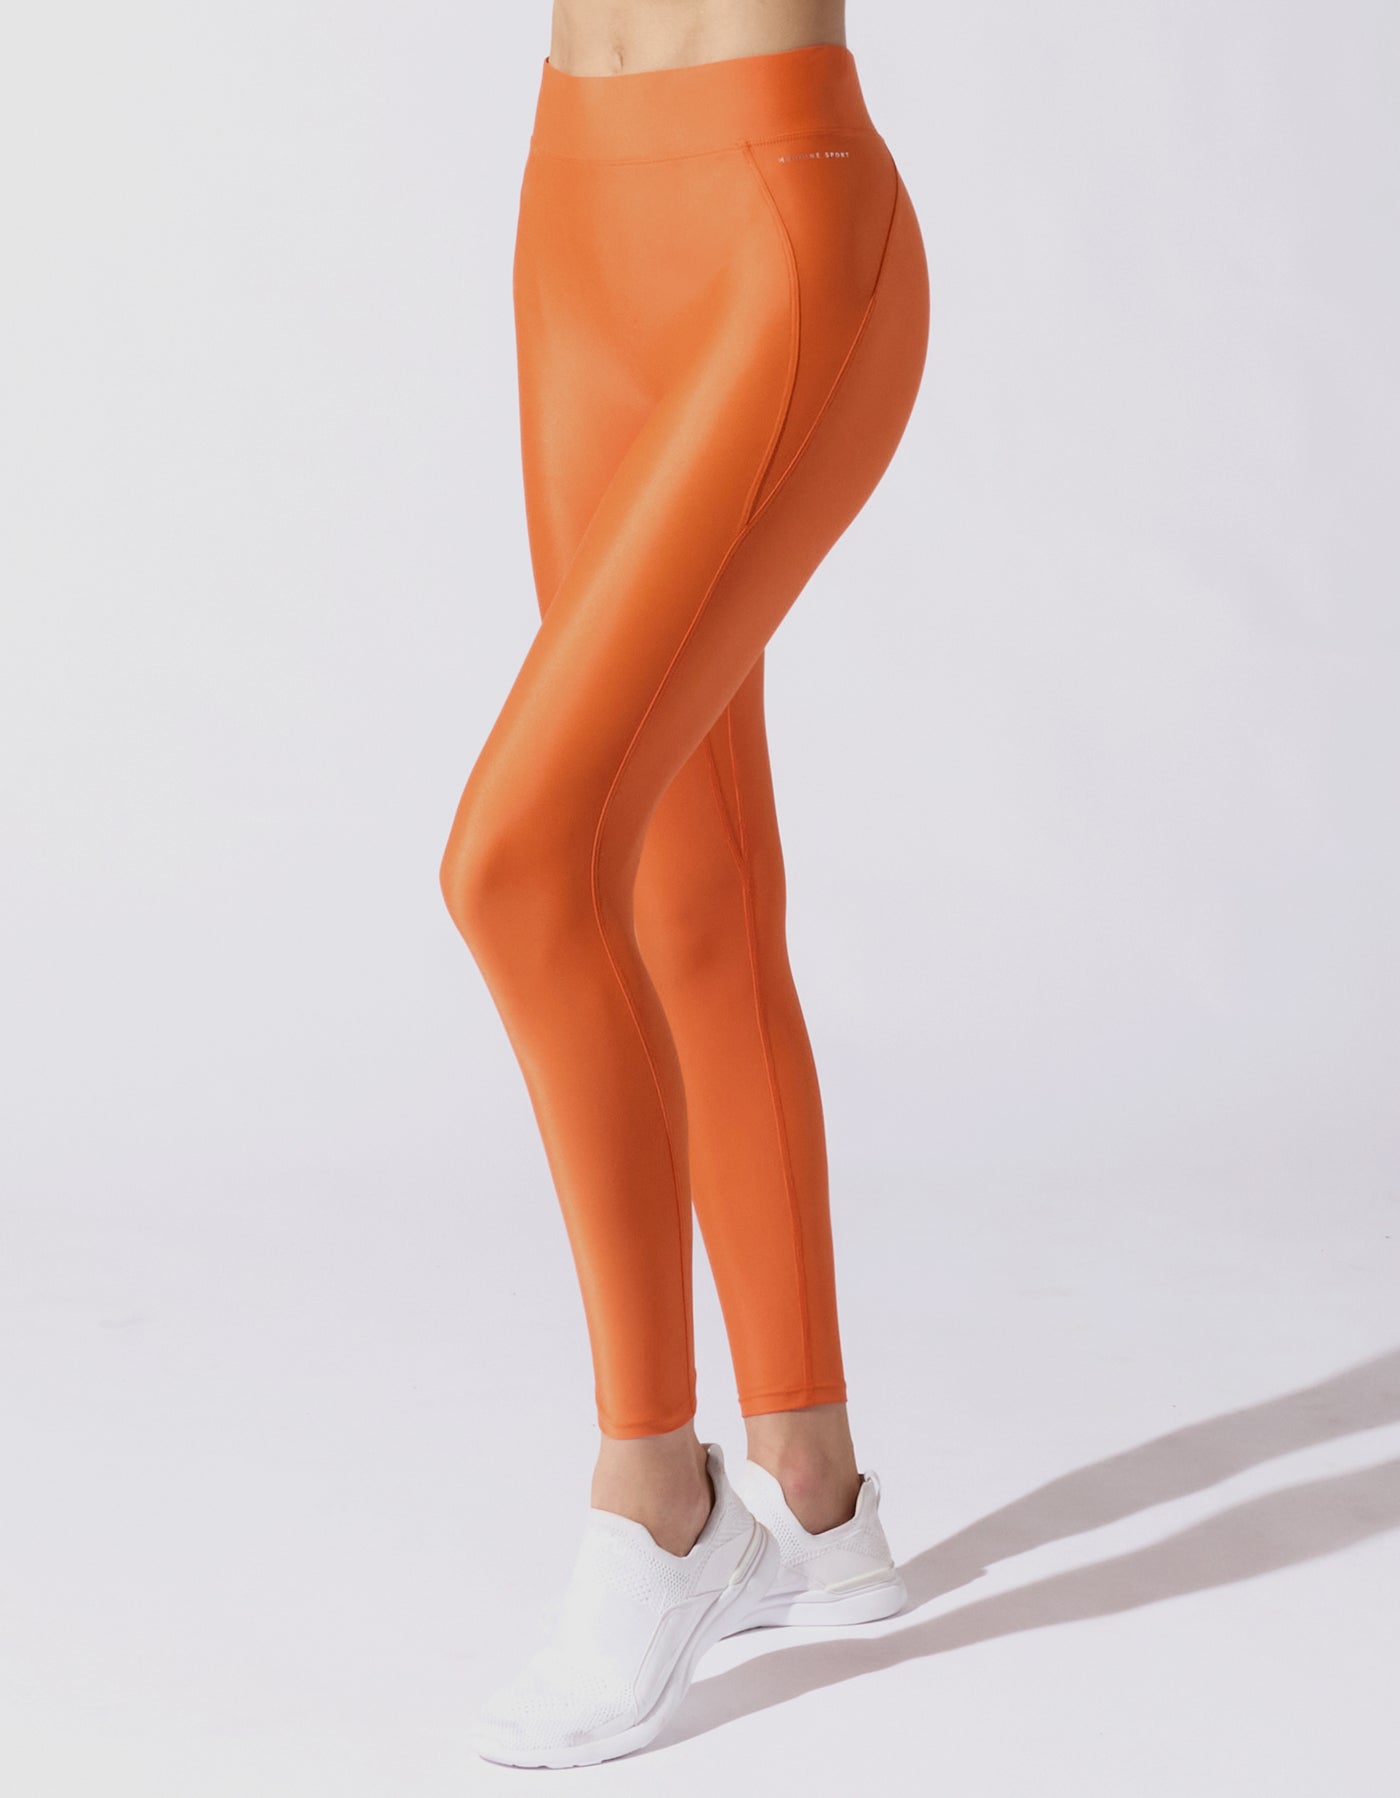 Tangerine Sky Leggings Tangerine Leggings Tie Dye Leggings Orange